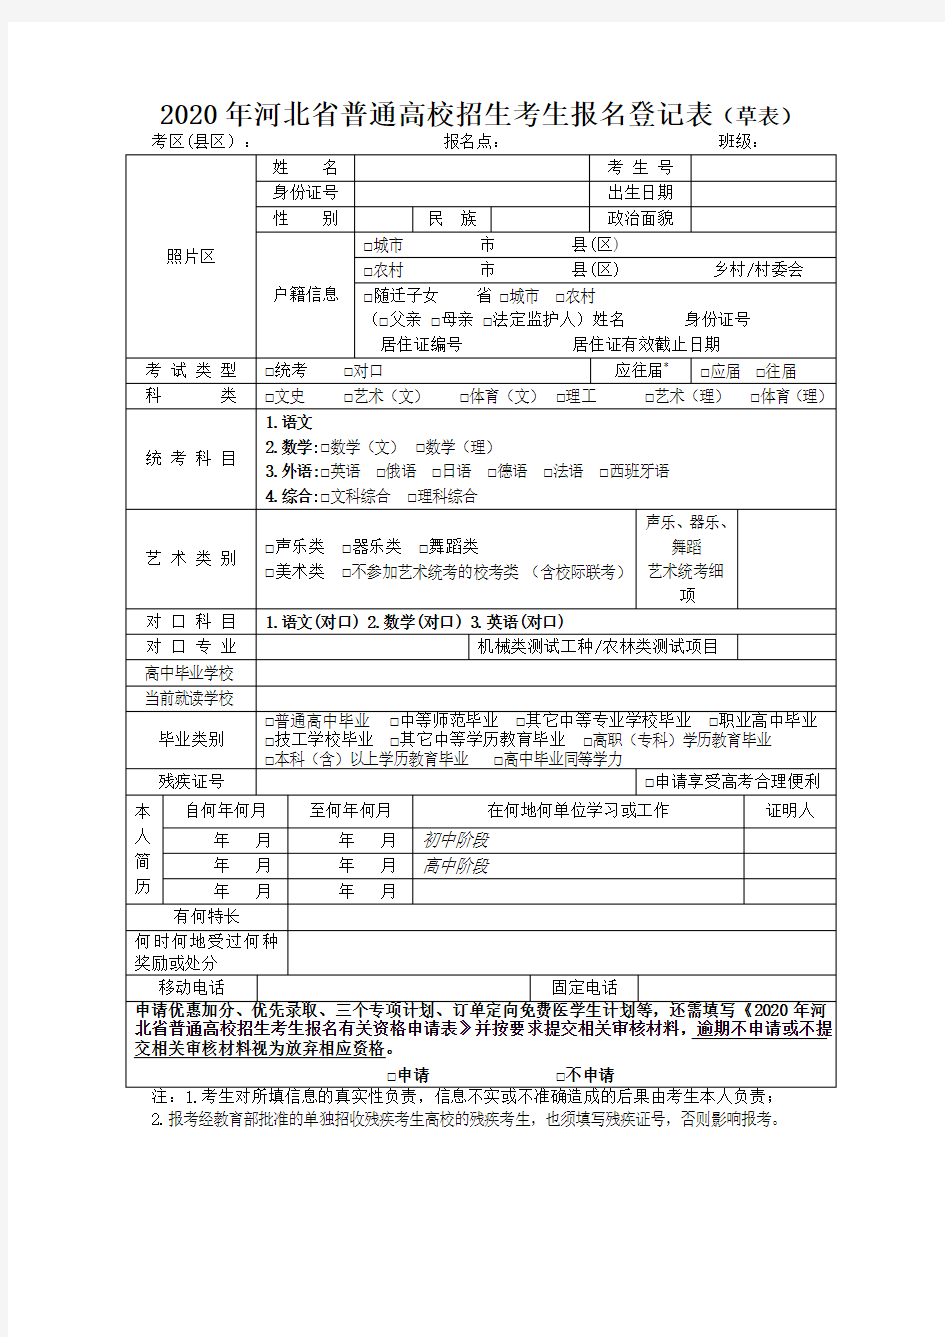 2020年河北省普通高校招生考生报名登记表(草表)